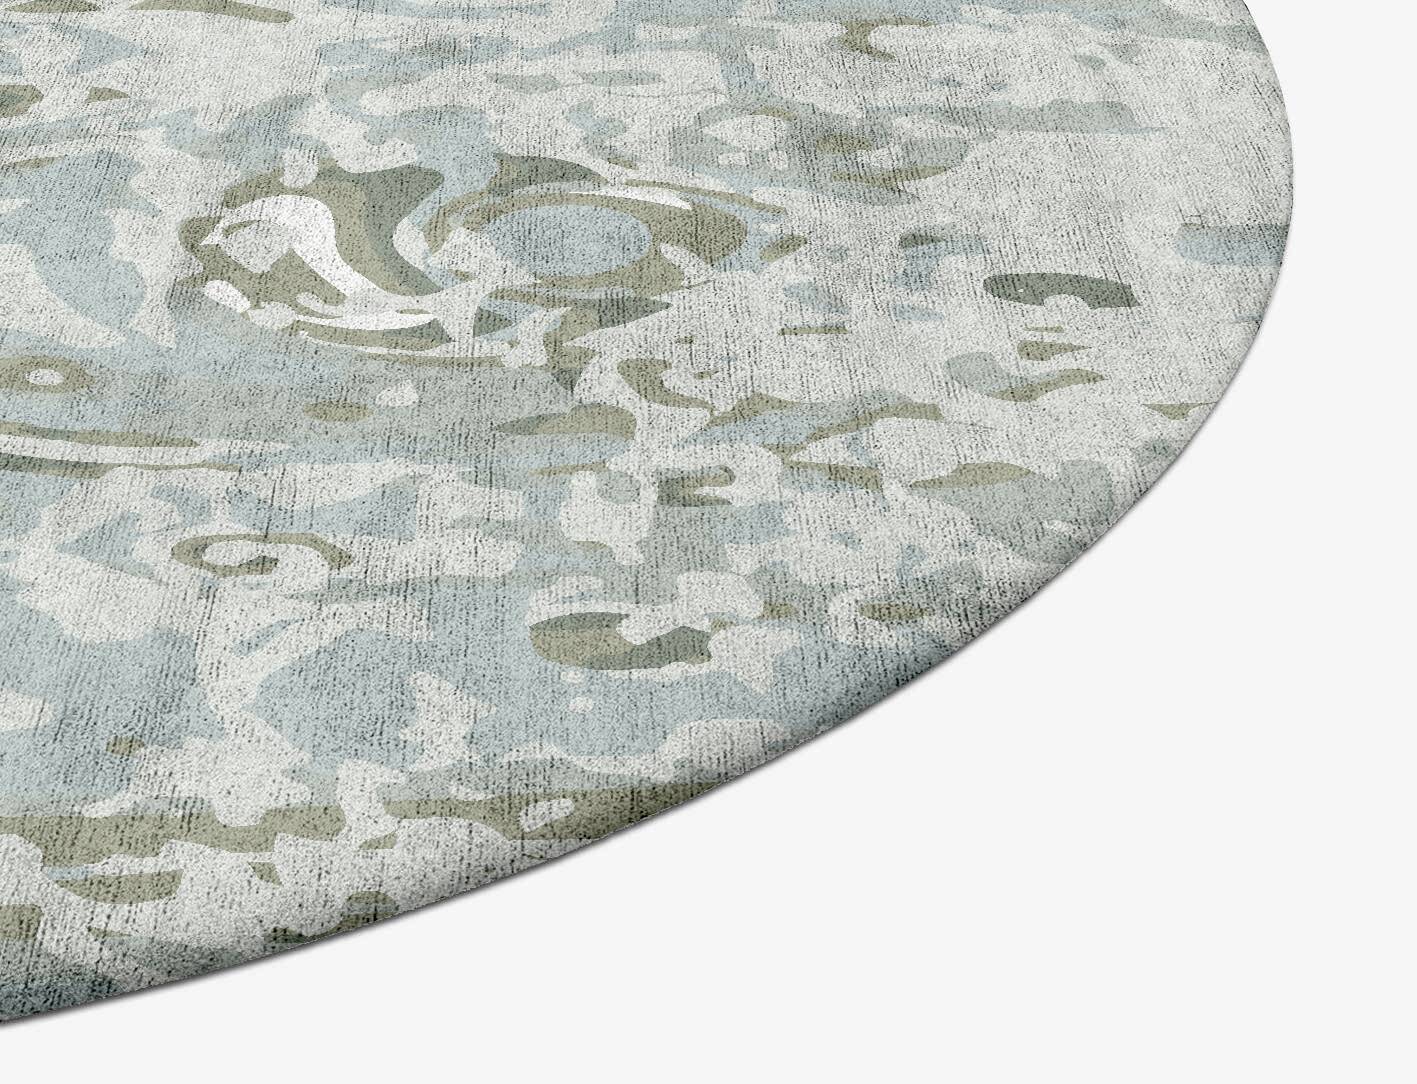 Air Bubble Surface Art Oval Hand Tufted Bamboo Silk Custom Rug by Rug Artisan